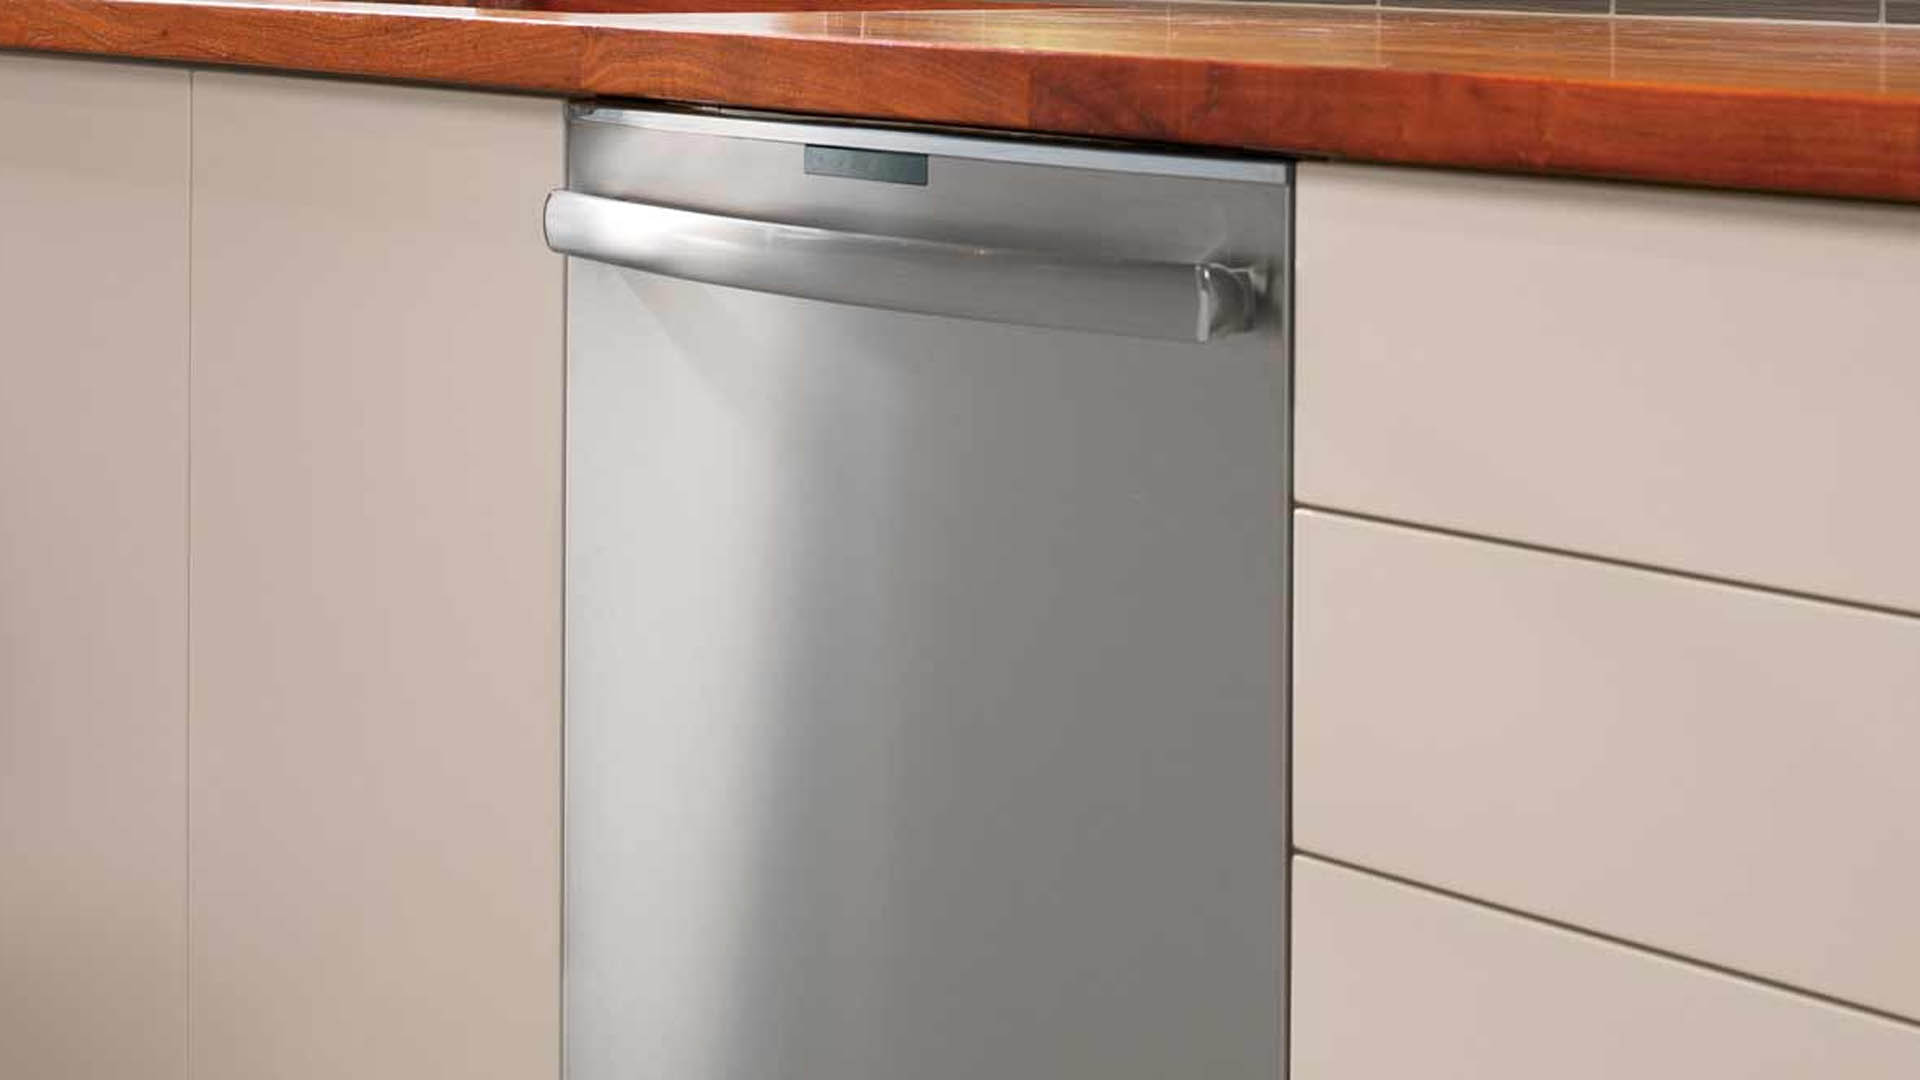 GE Profile Dishwasher Repair | GE Monogram Repair Expert